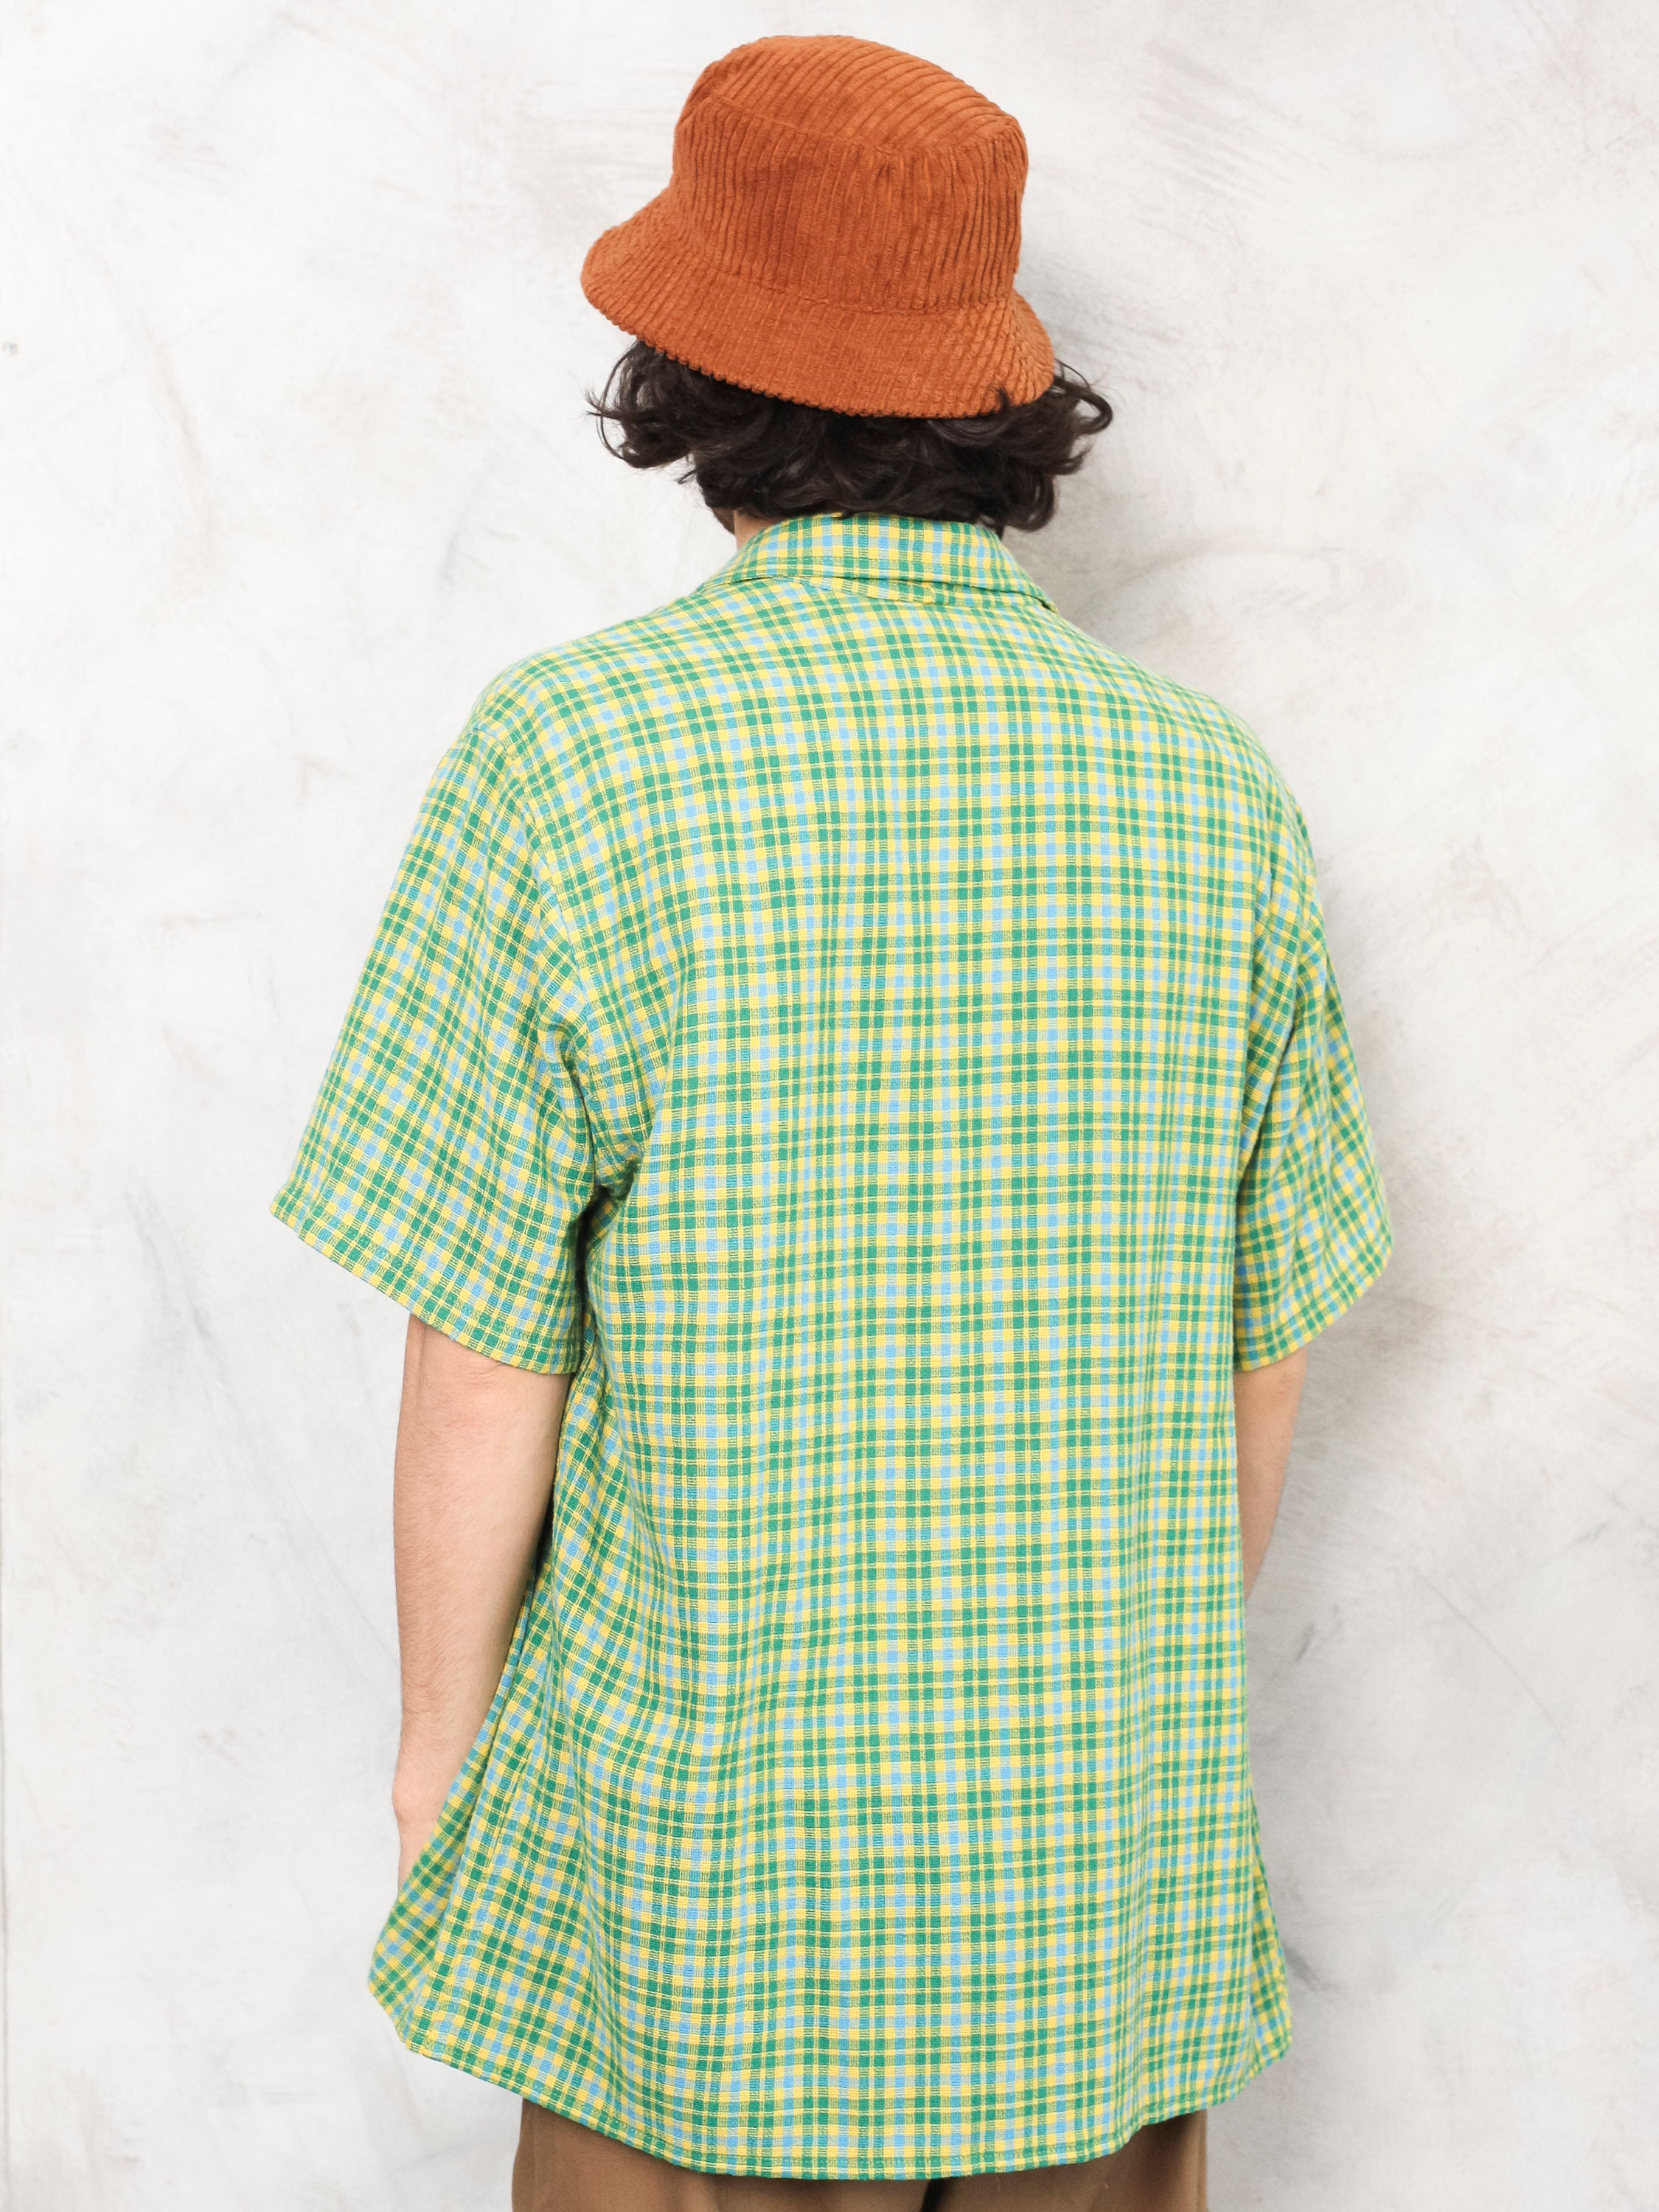 Plaid Green Shirt vintage 80s cotton summer shirt button up short ...